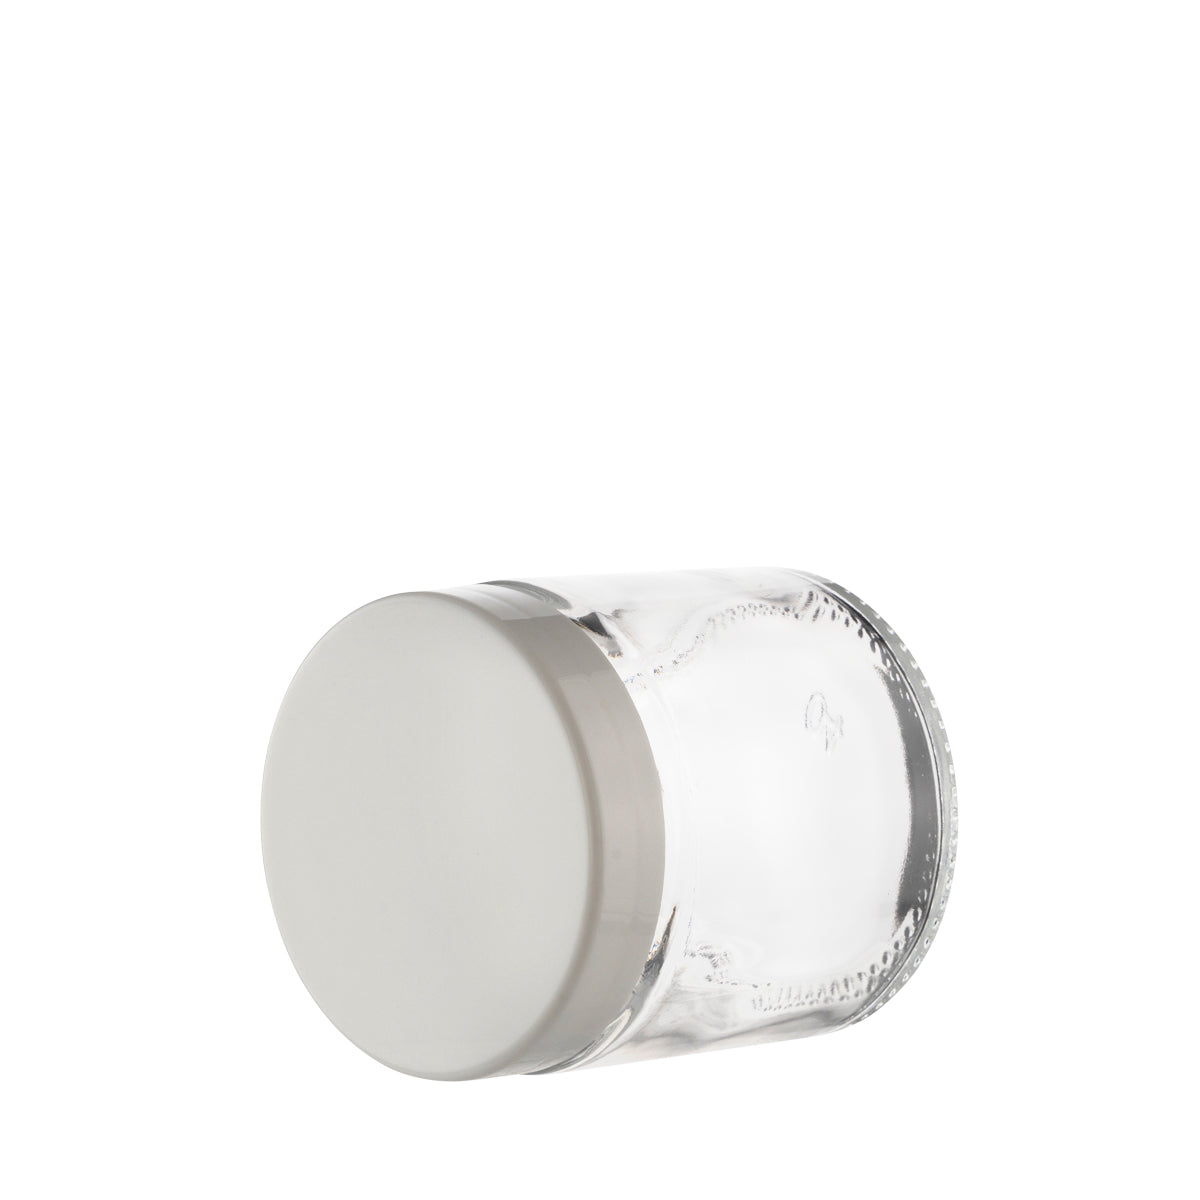 Glass Jar | Smooth Sided Clear Glass Jars w/ White Caps | 3oz - 150 Count Glass Jar Biohazard Inc   